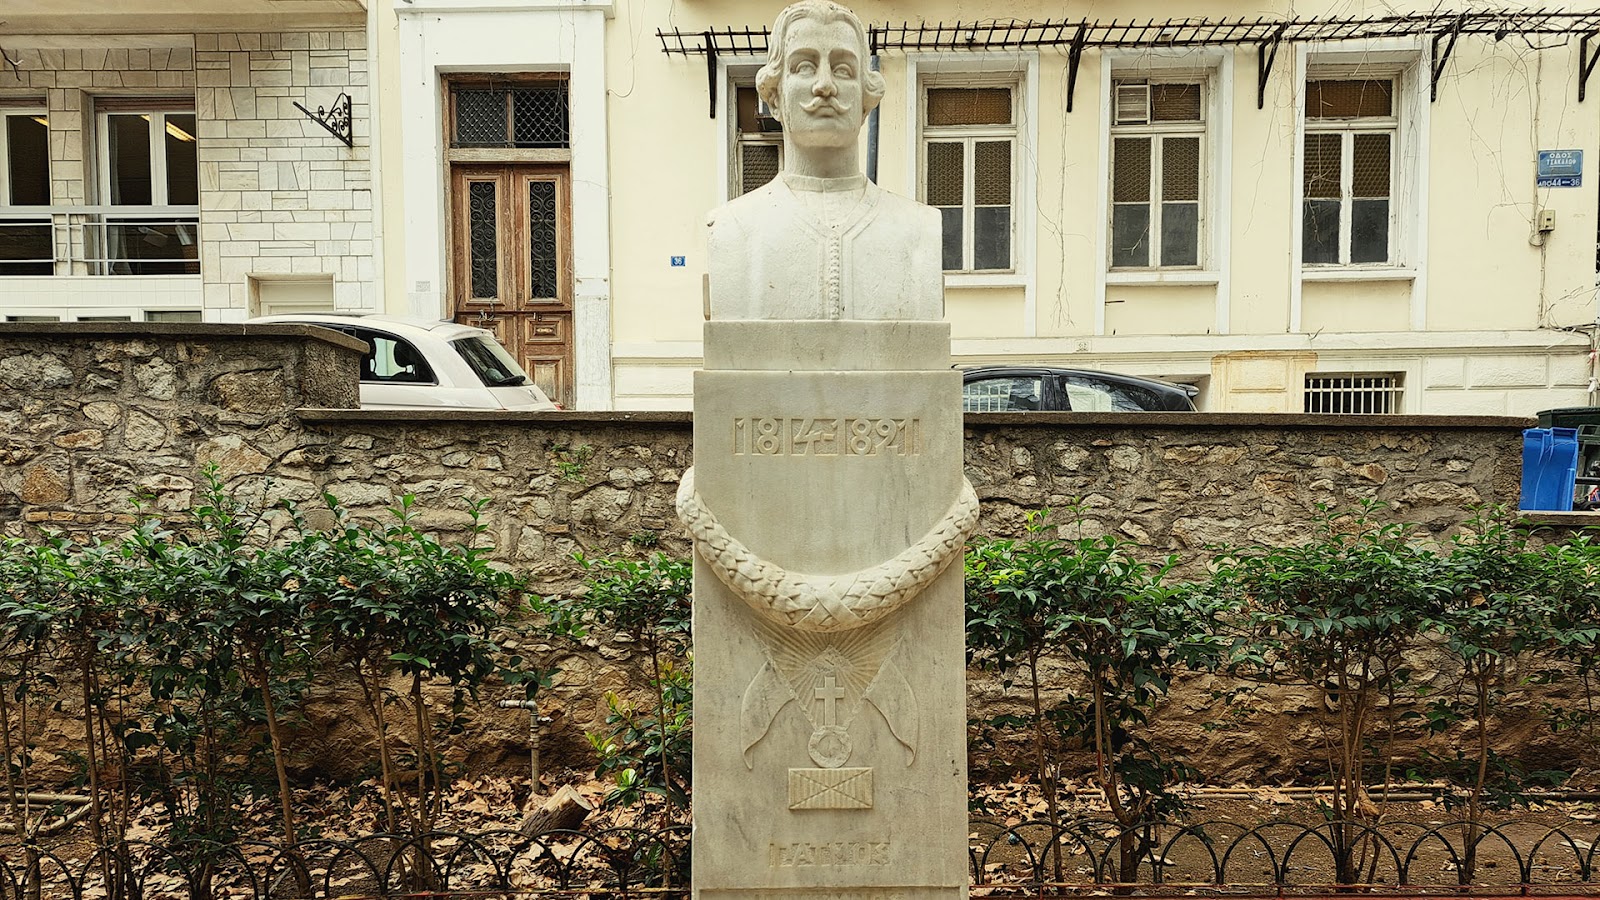 Η προτομή του Εμμανουήλ Ξάνθου στην πλατεία του Αγίου Διονυσίου στο Κολωνάκι. [Credit: ΝΙΚΟΣ ΒΑΤΟΠΟΥΛΟΣ]